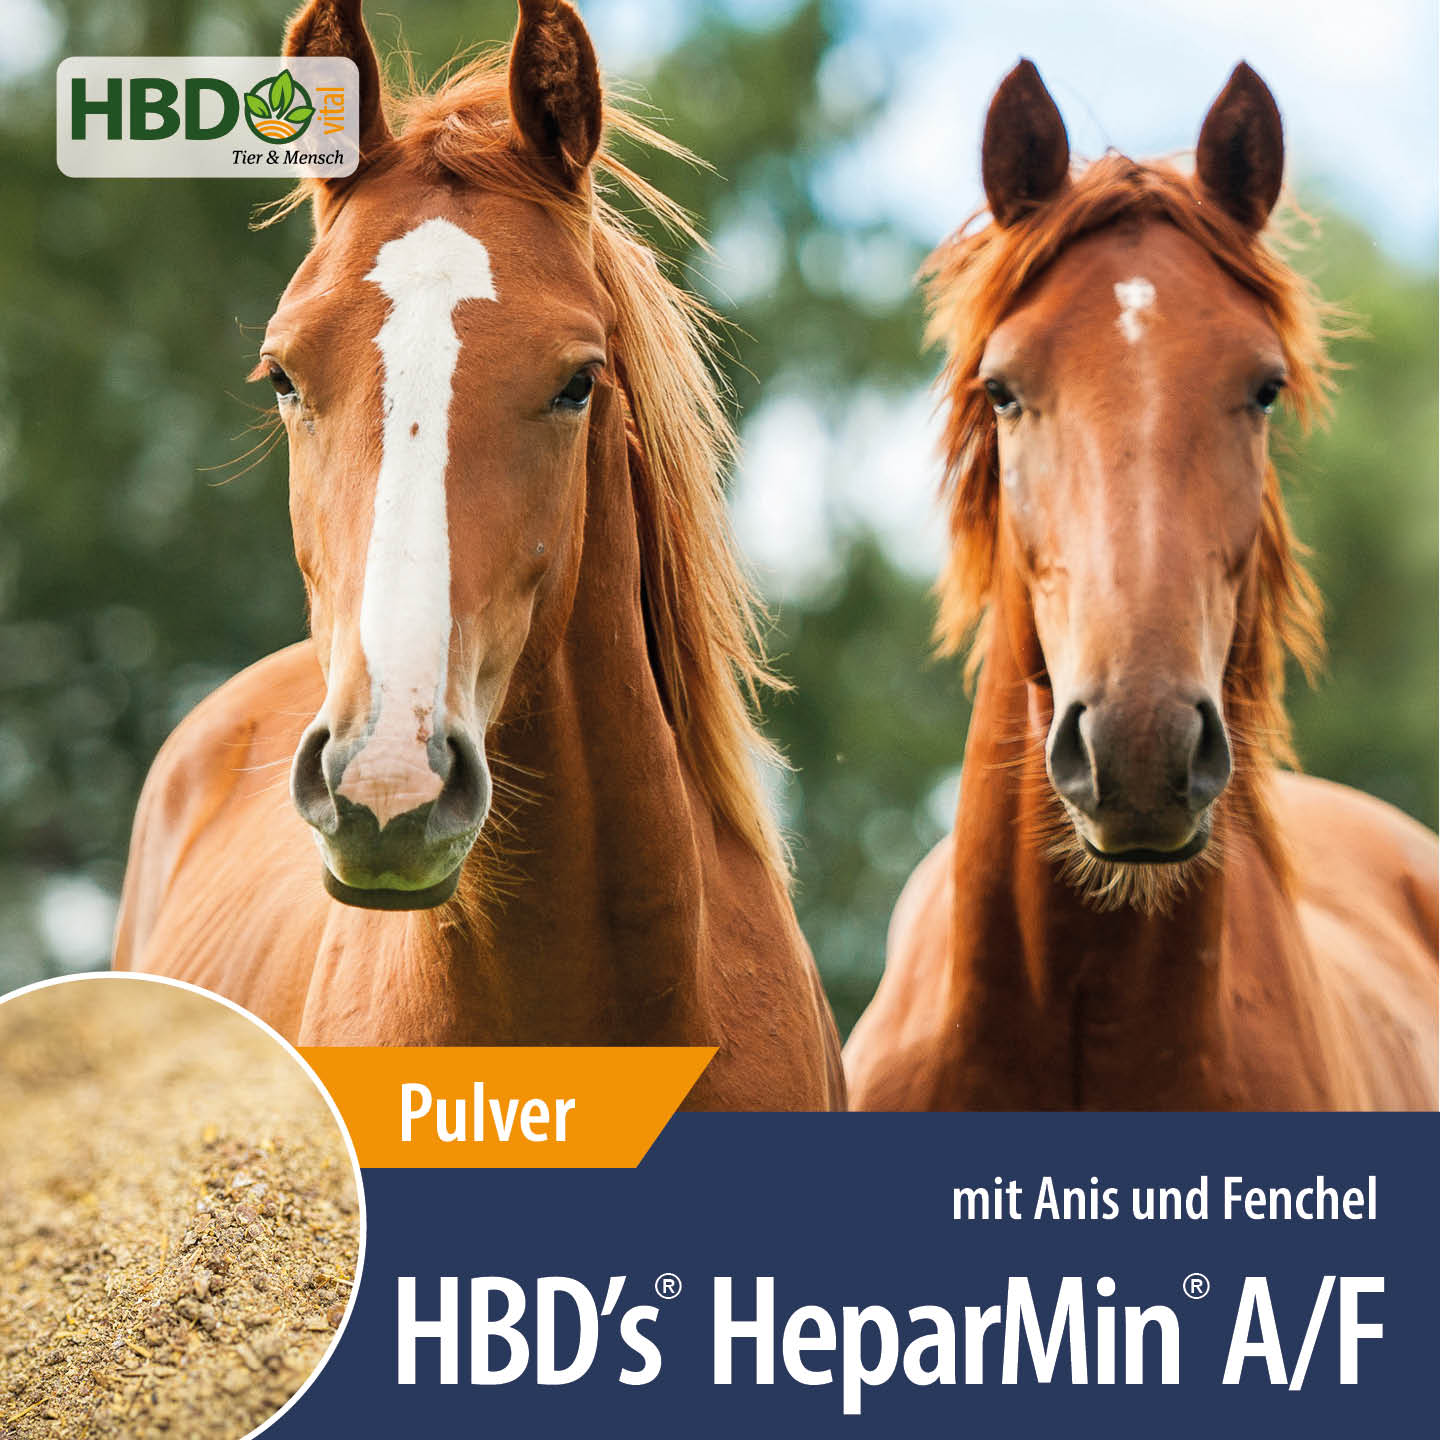 Shopbild für HBD’s HeparMin A/F- Das Bild zeigt den Produktnamen sowie den Hinweis, dass es sich um ein Pulver handelt und Anis und Fenchel beinhaltet. Zwei braune Pferde sind zu sehen.